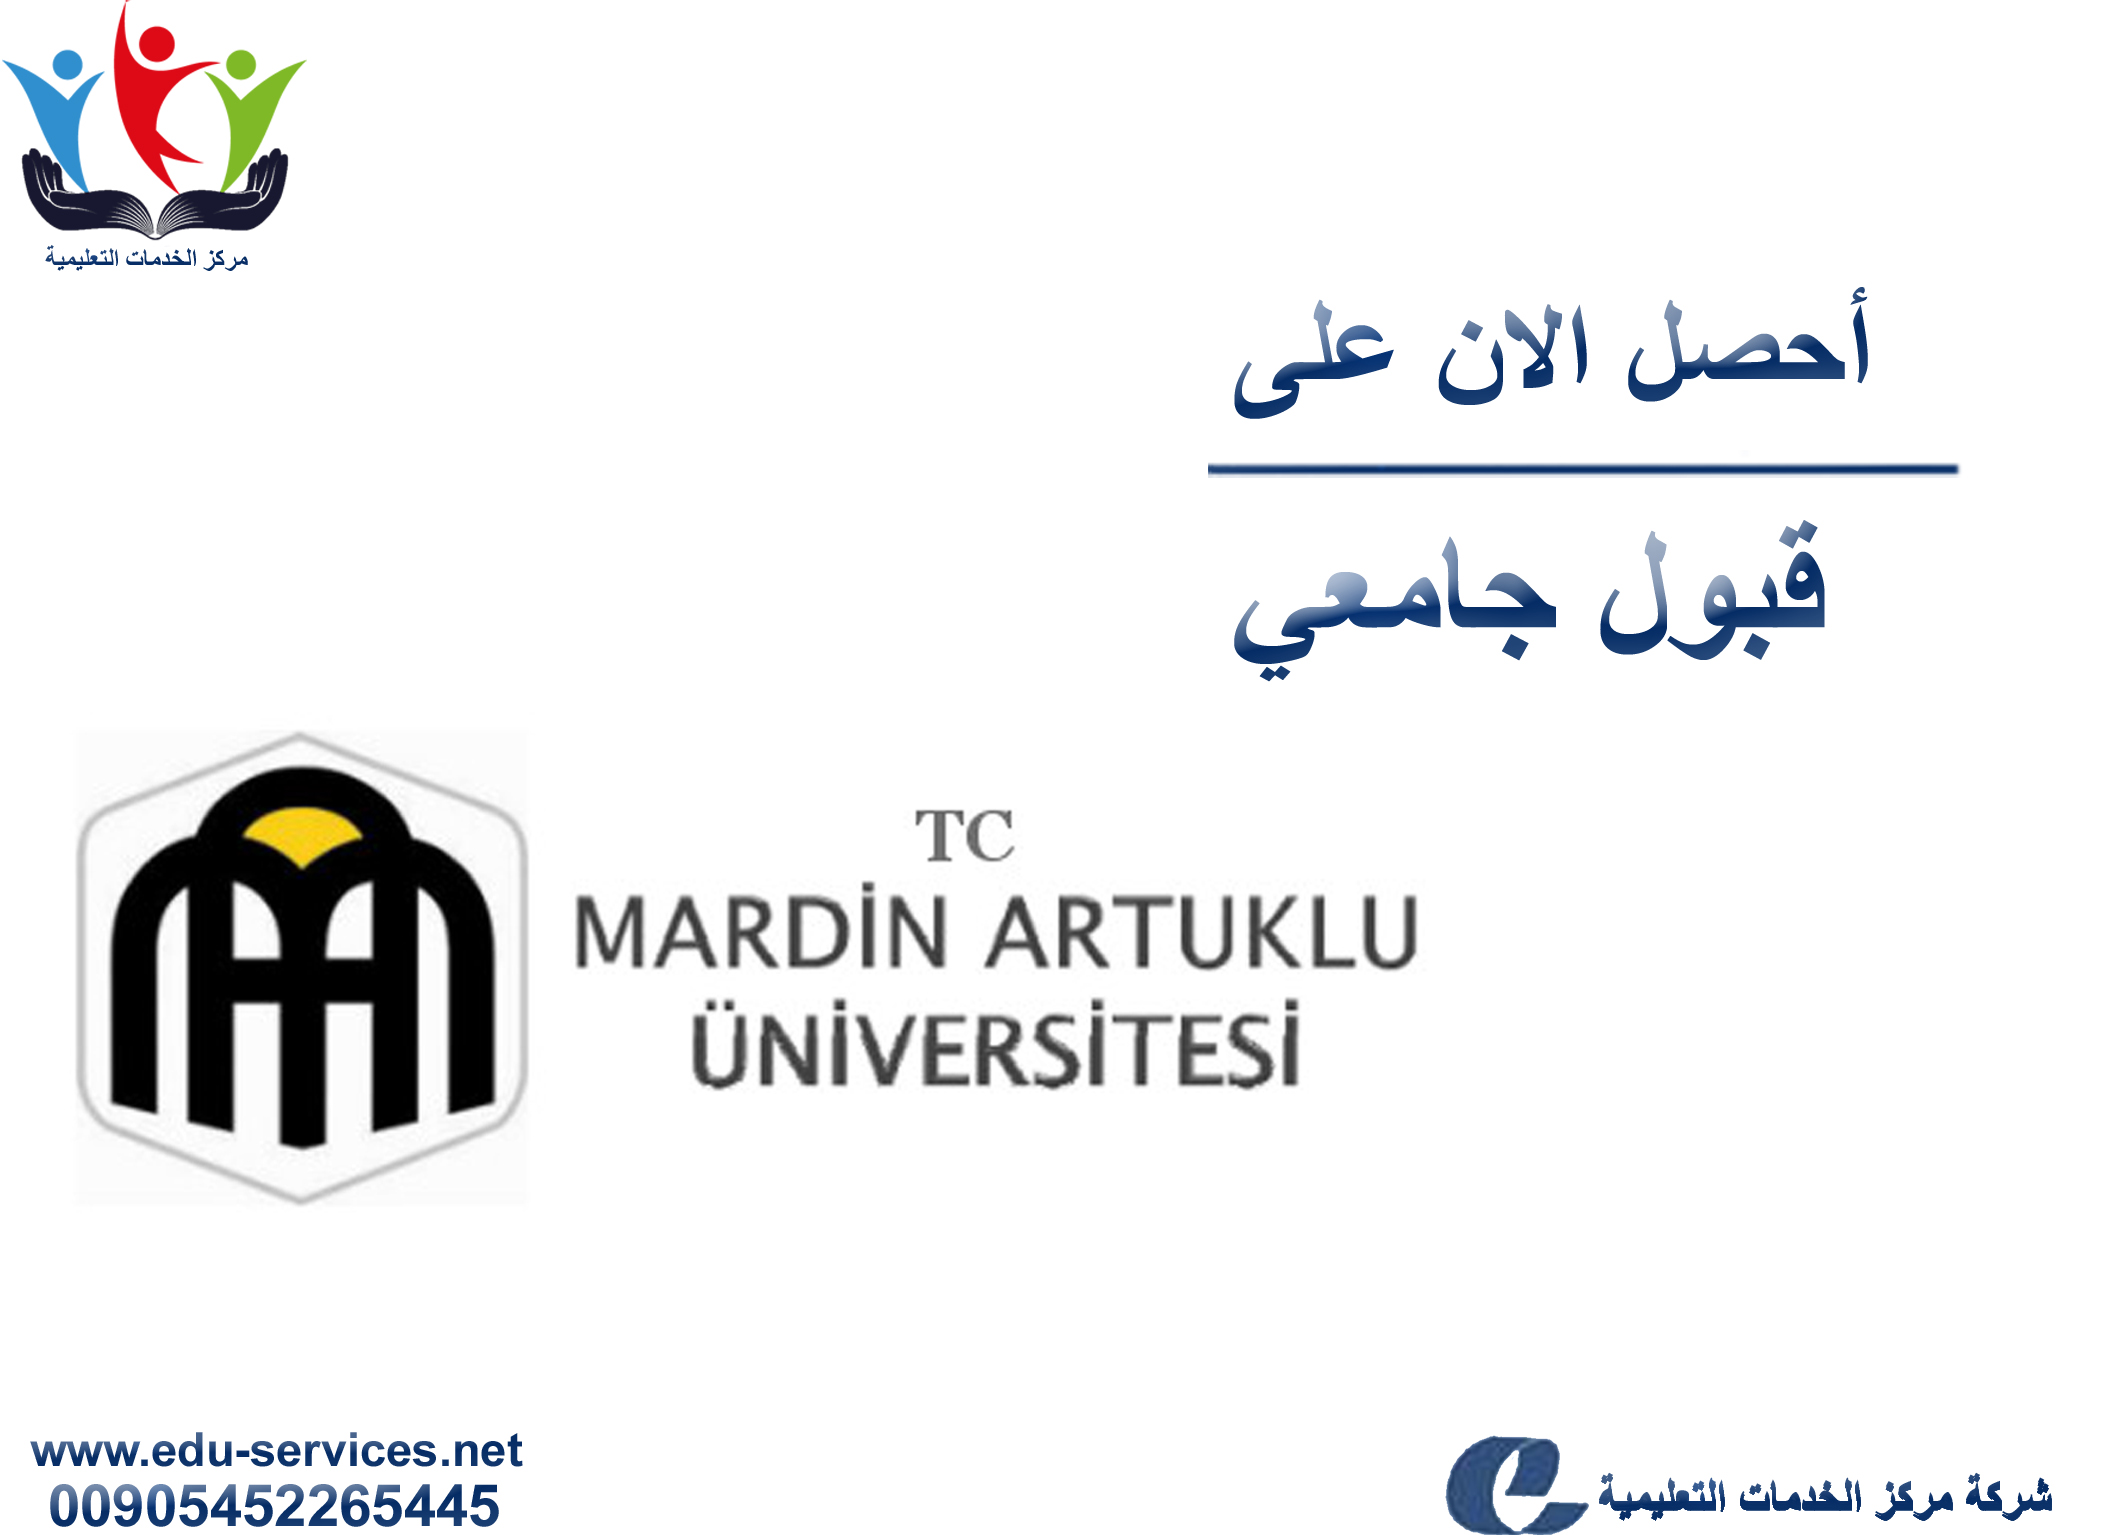 افتتاح التسجيل في جامعة ماردين للعام 2018-2019